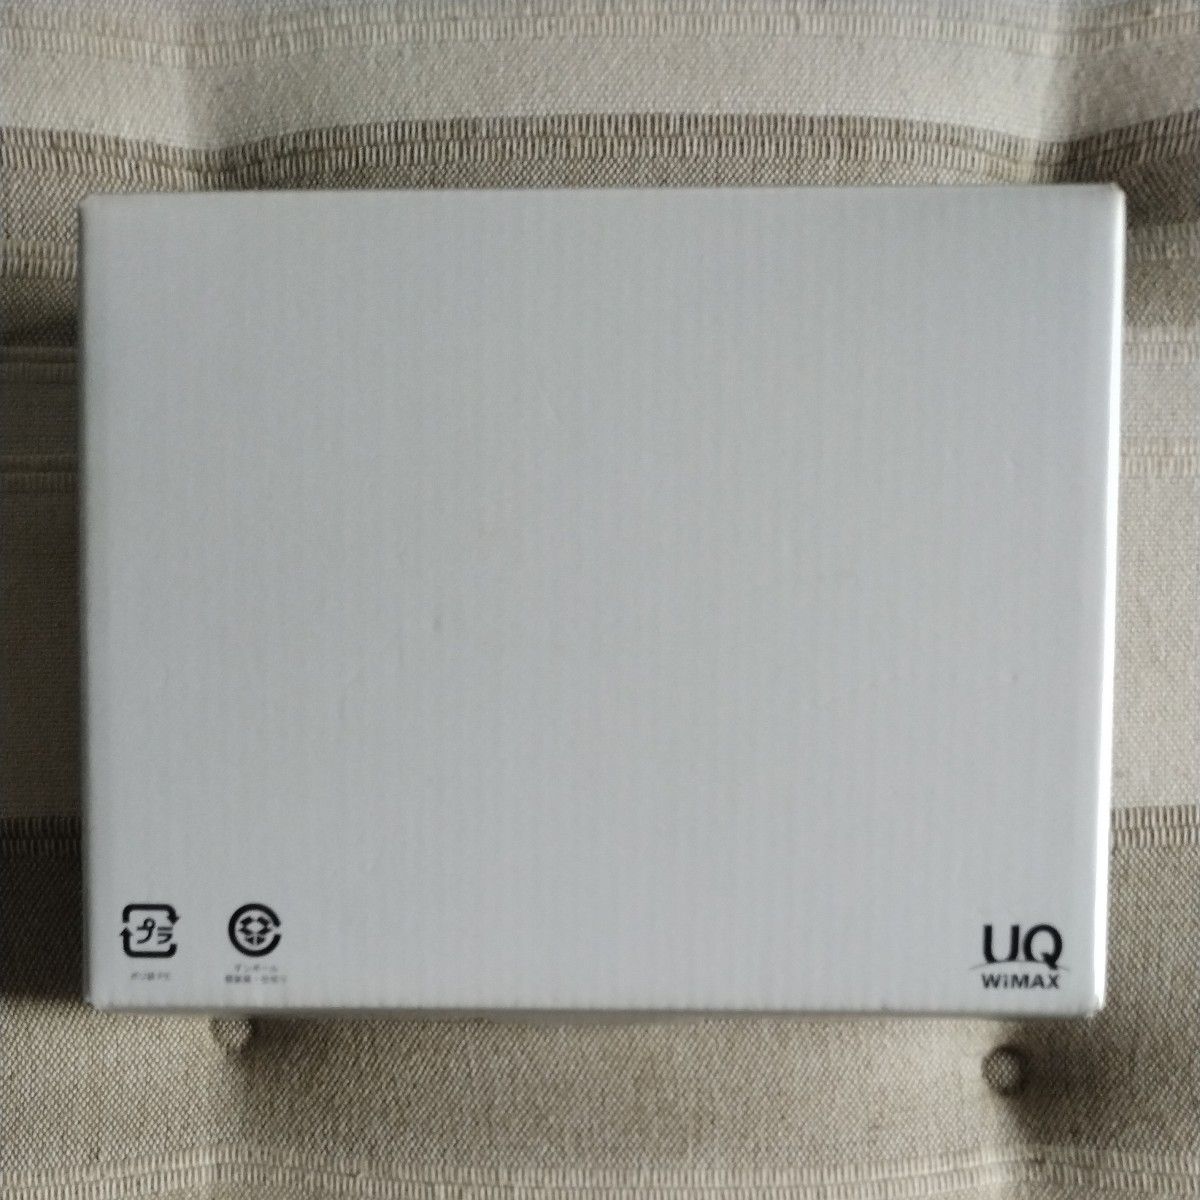 UQ WiMAX モバイルルーター Speed Wi-Fi NEXT WX06 Wi-Fi (ホワイト)